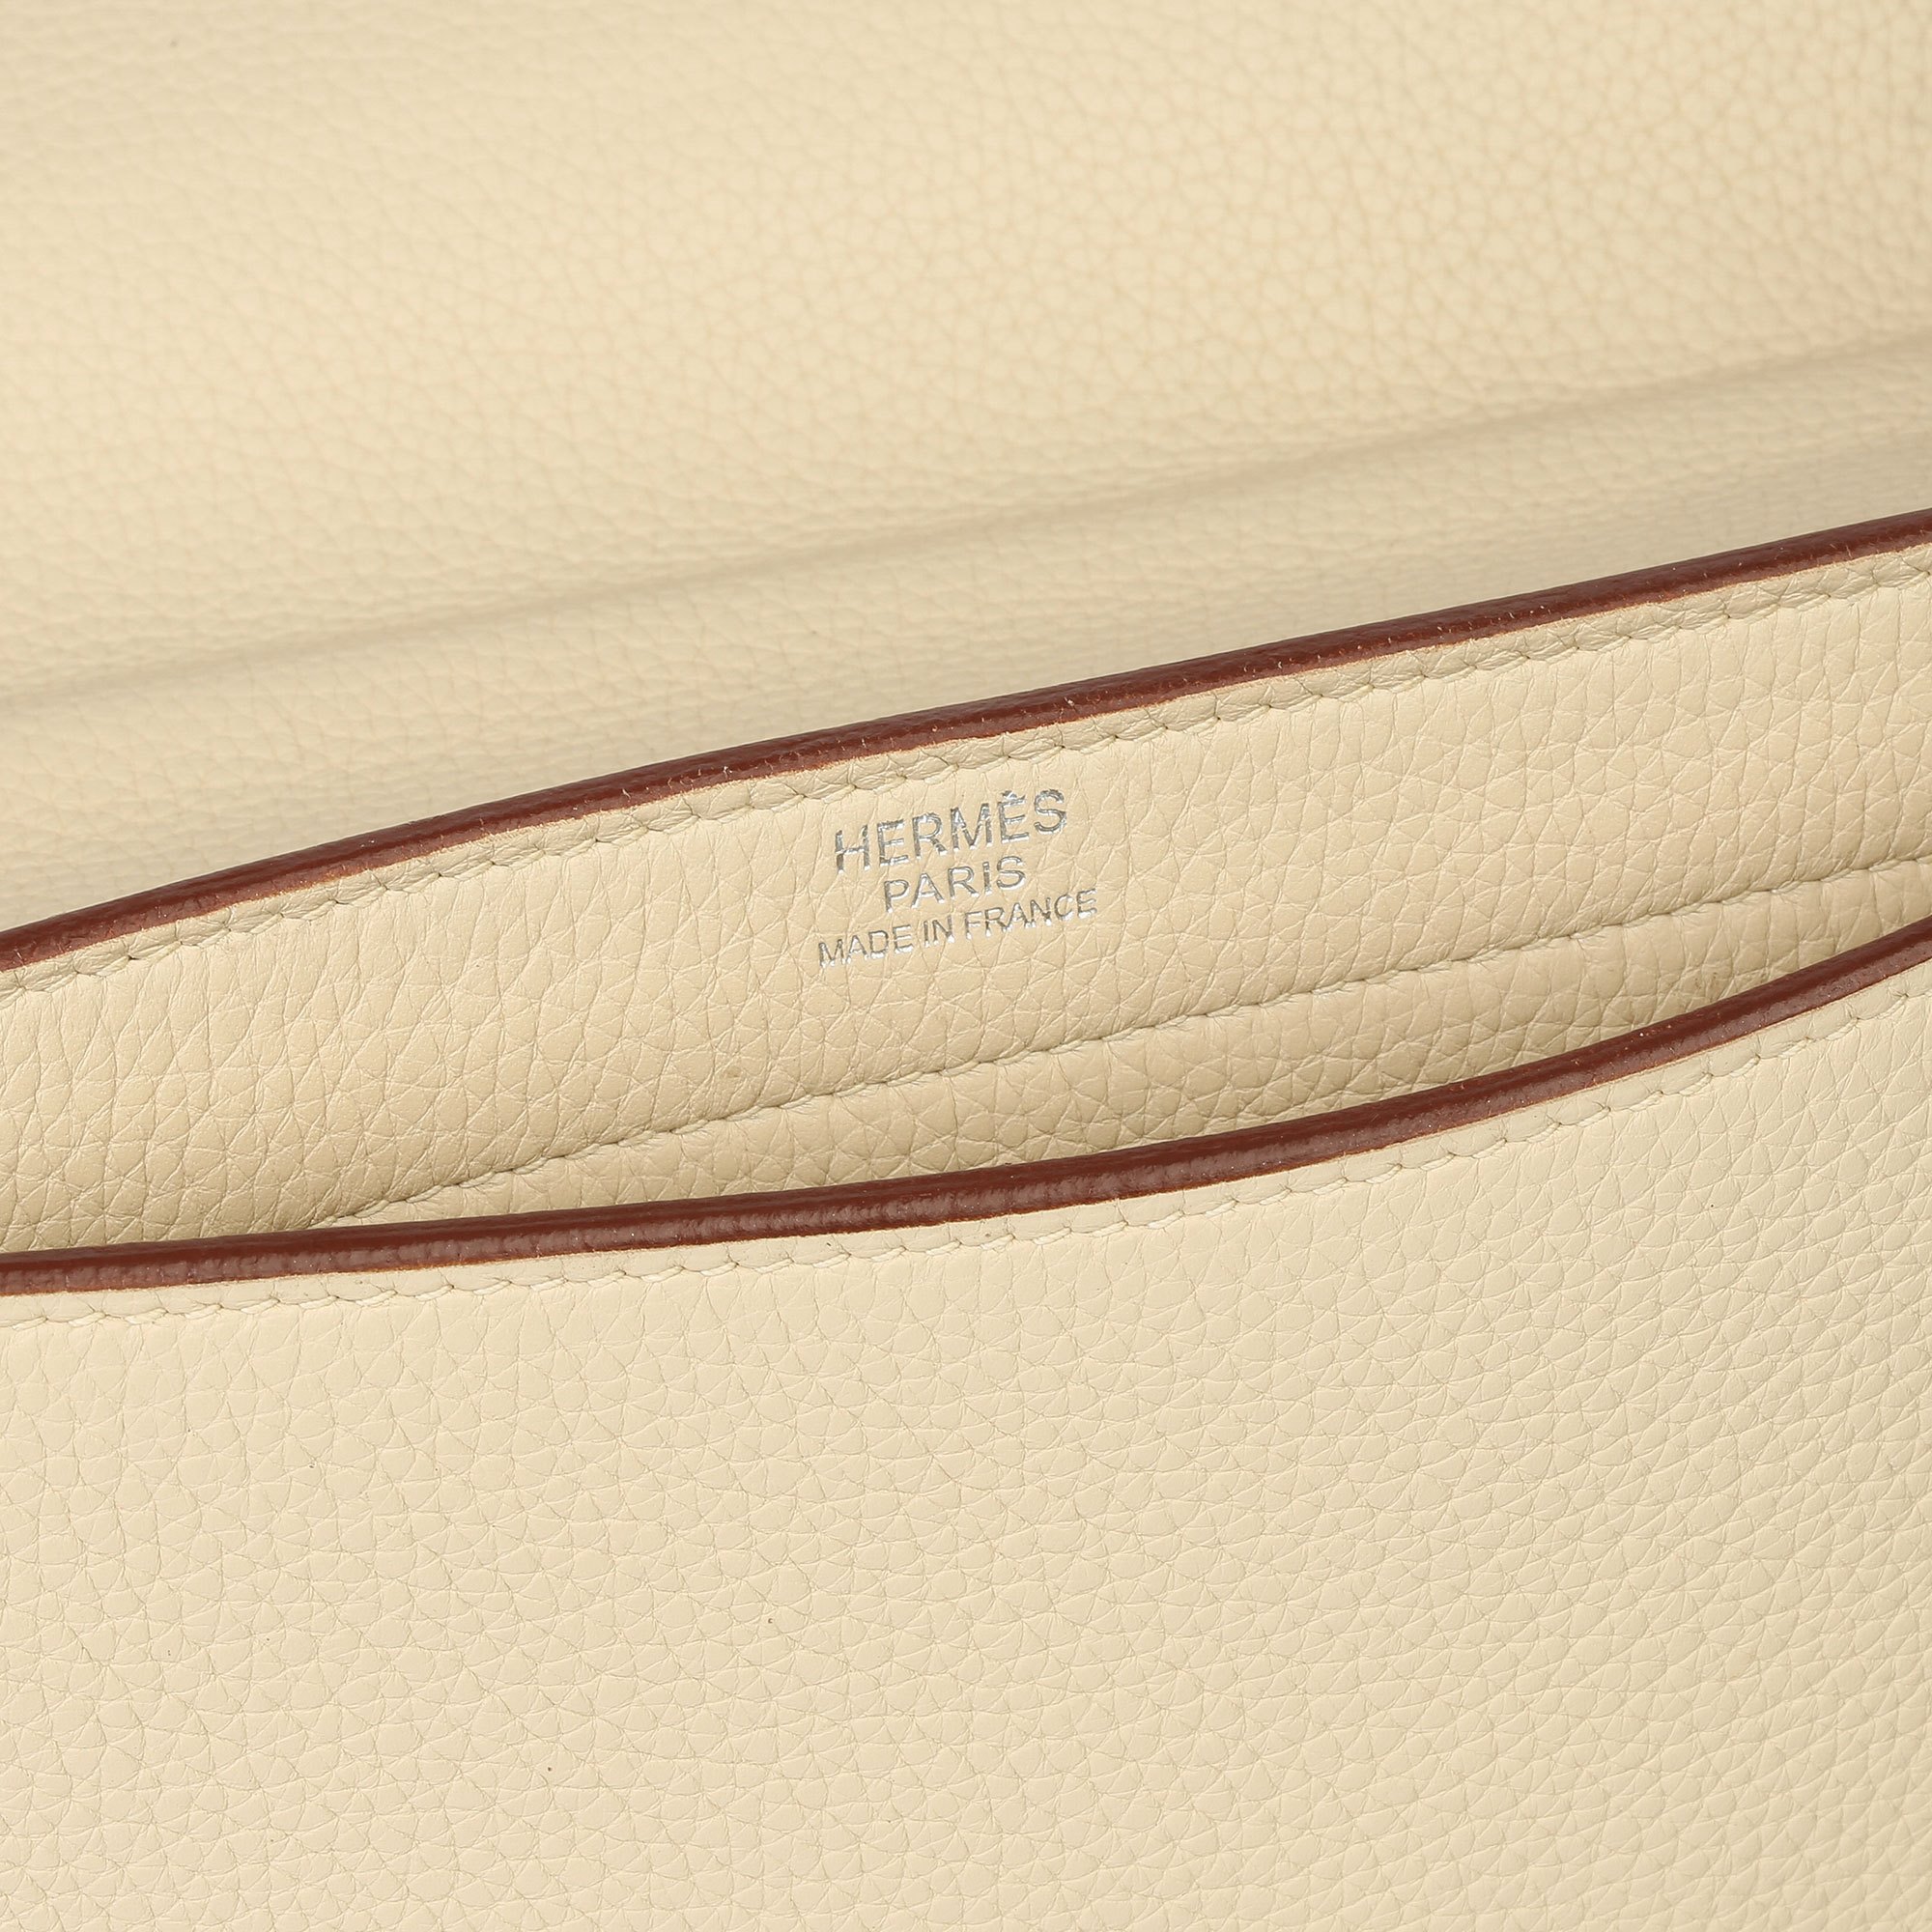 Hermès Parchemin Clemence Leather Sac a Depeche 27